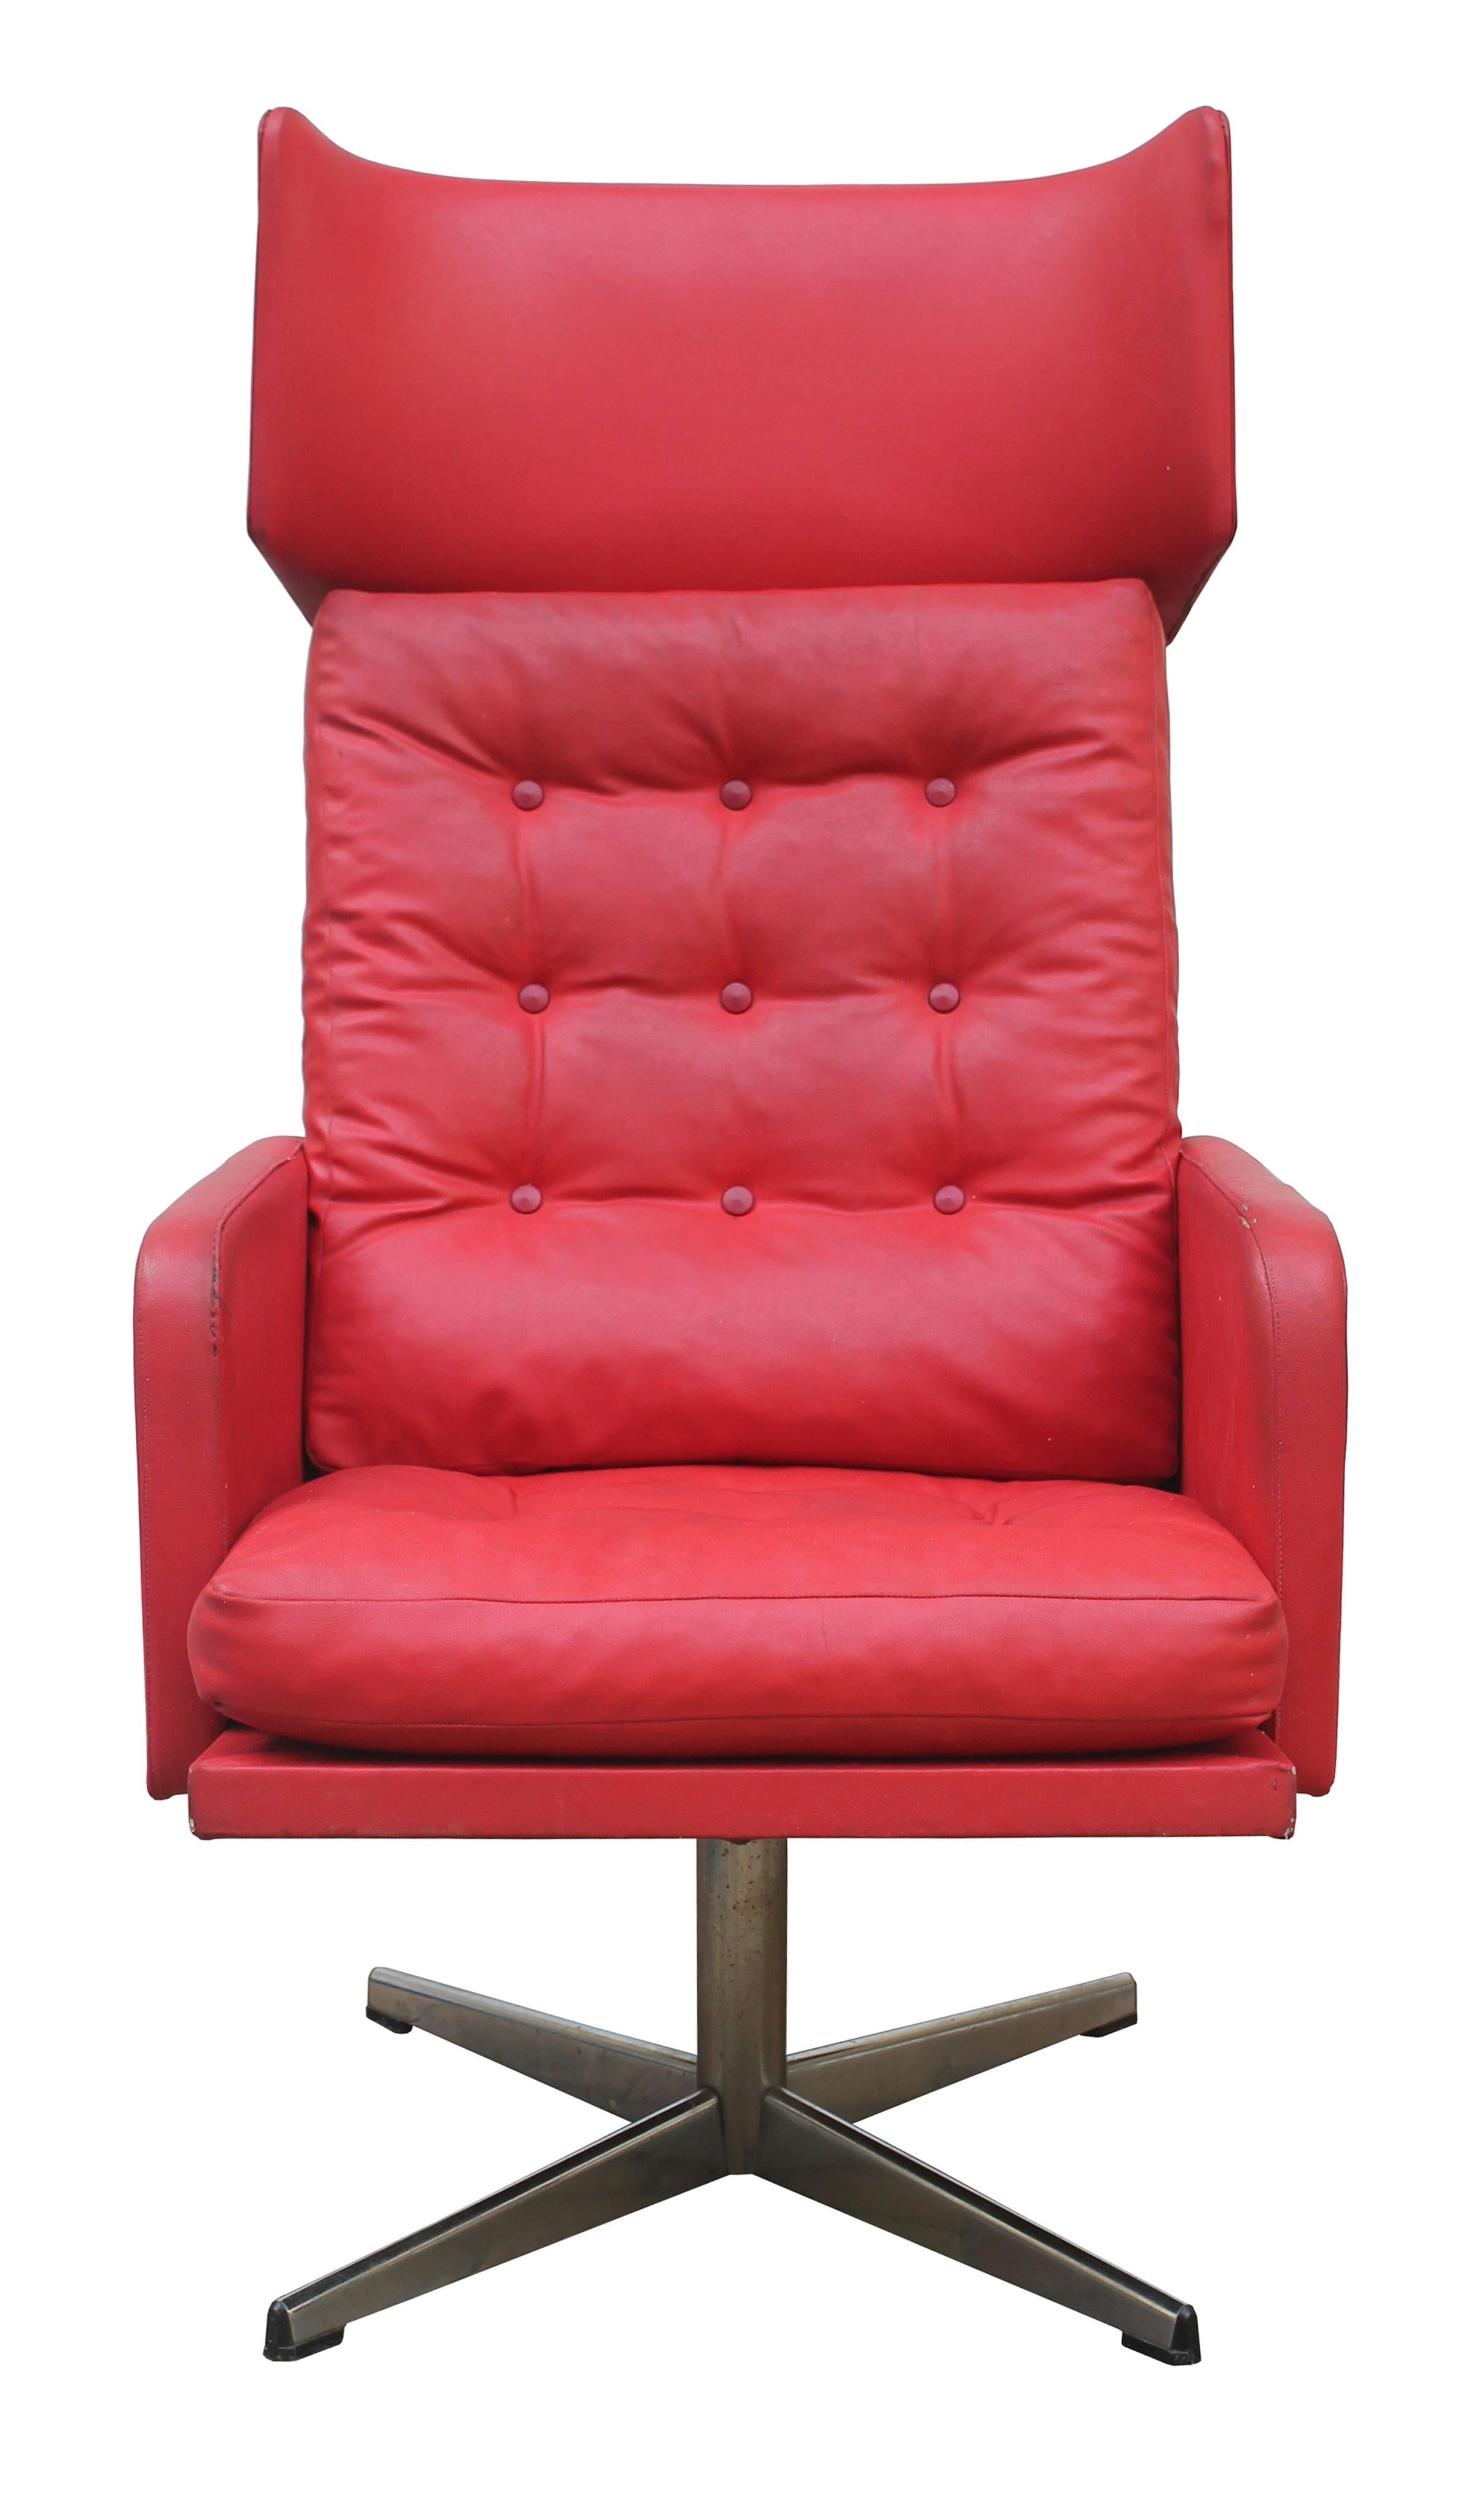 Dieser leuchtend rote Drehsessel ist ein willkommener Farbakzent in jeder Einrichtung.

Ein originaler Sessel aus den 1970er Jahren, der in der kommunistischen Ära der Tschechoslowakei hergestellt wurde und als der Gipfel des Luxus galt. Es war fast